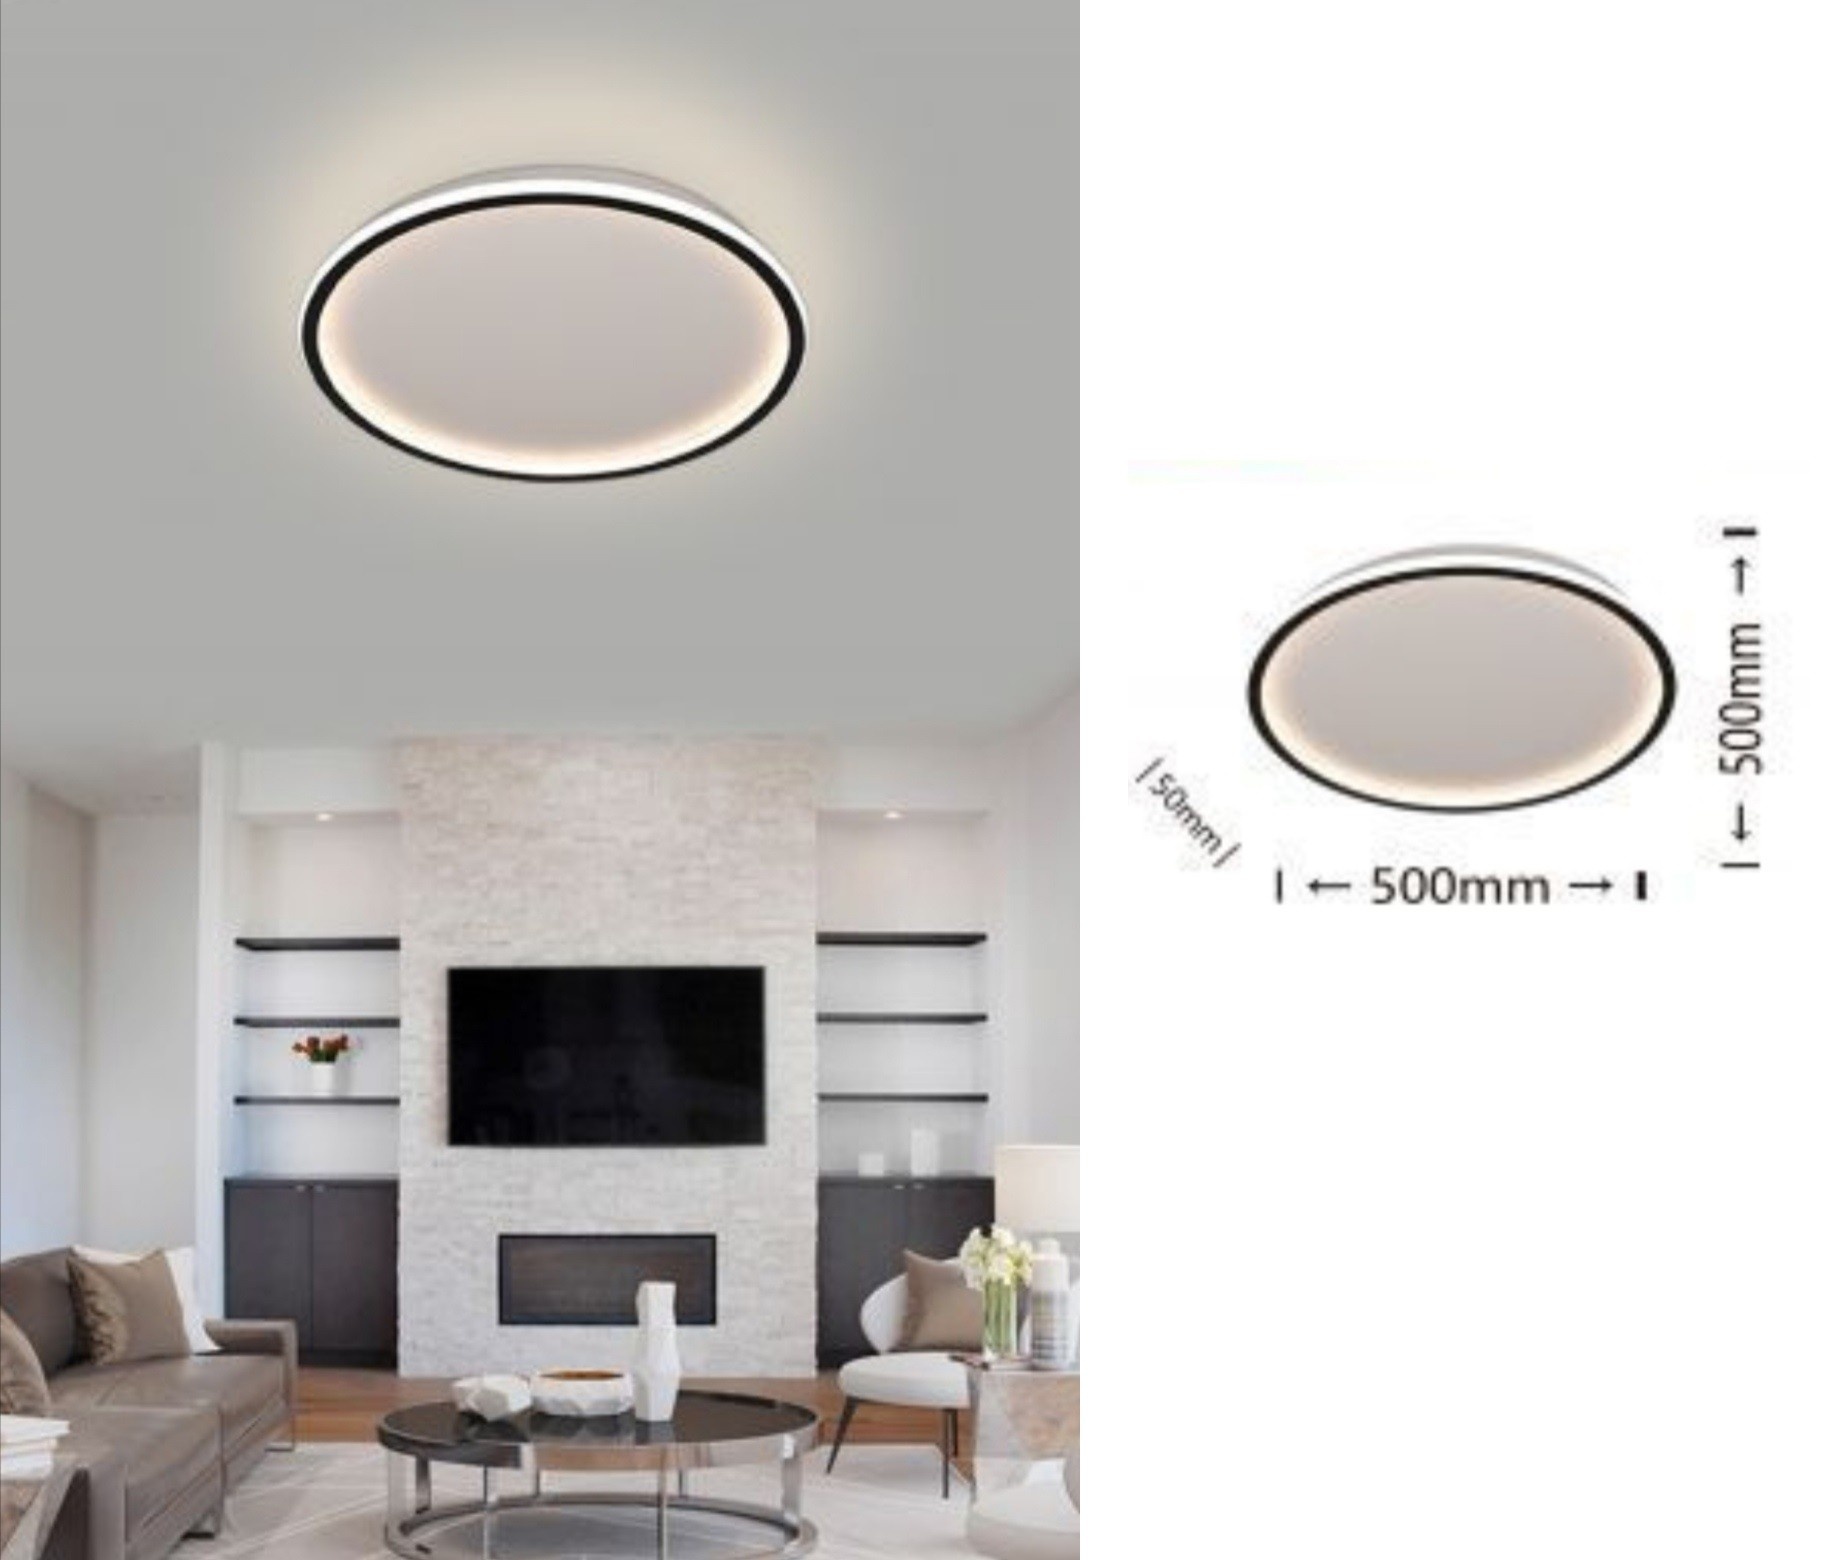 https://www.pianetalowcost.it/8259/plafoniera-led-da-soffitto-43w-lampadario-tondo-cerchio-design-moderno-luce-bianco-naturale-per-camera-cucina-salotto.jpg